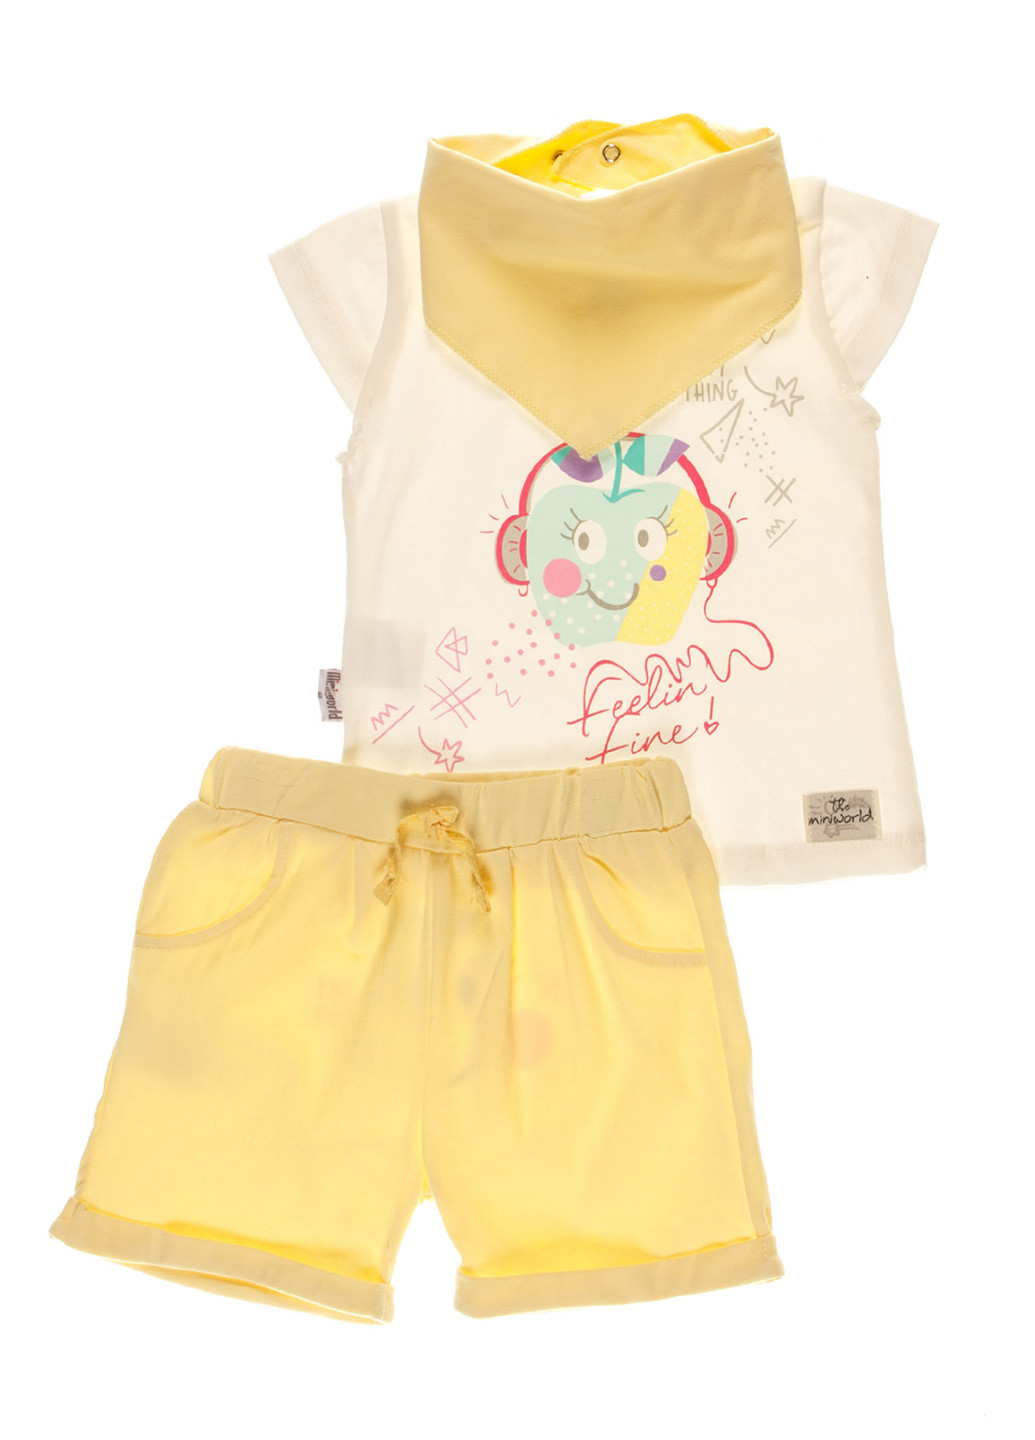 Жовтий літній комплект (футболка, шорти, манишка) Miniworld